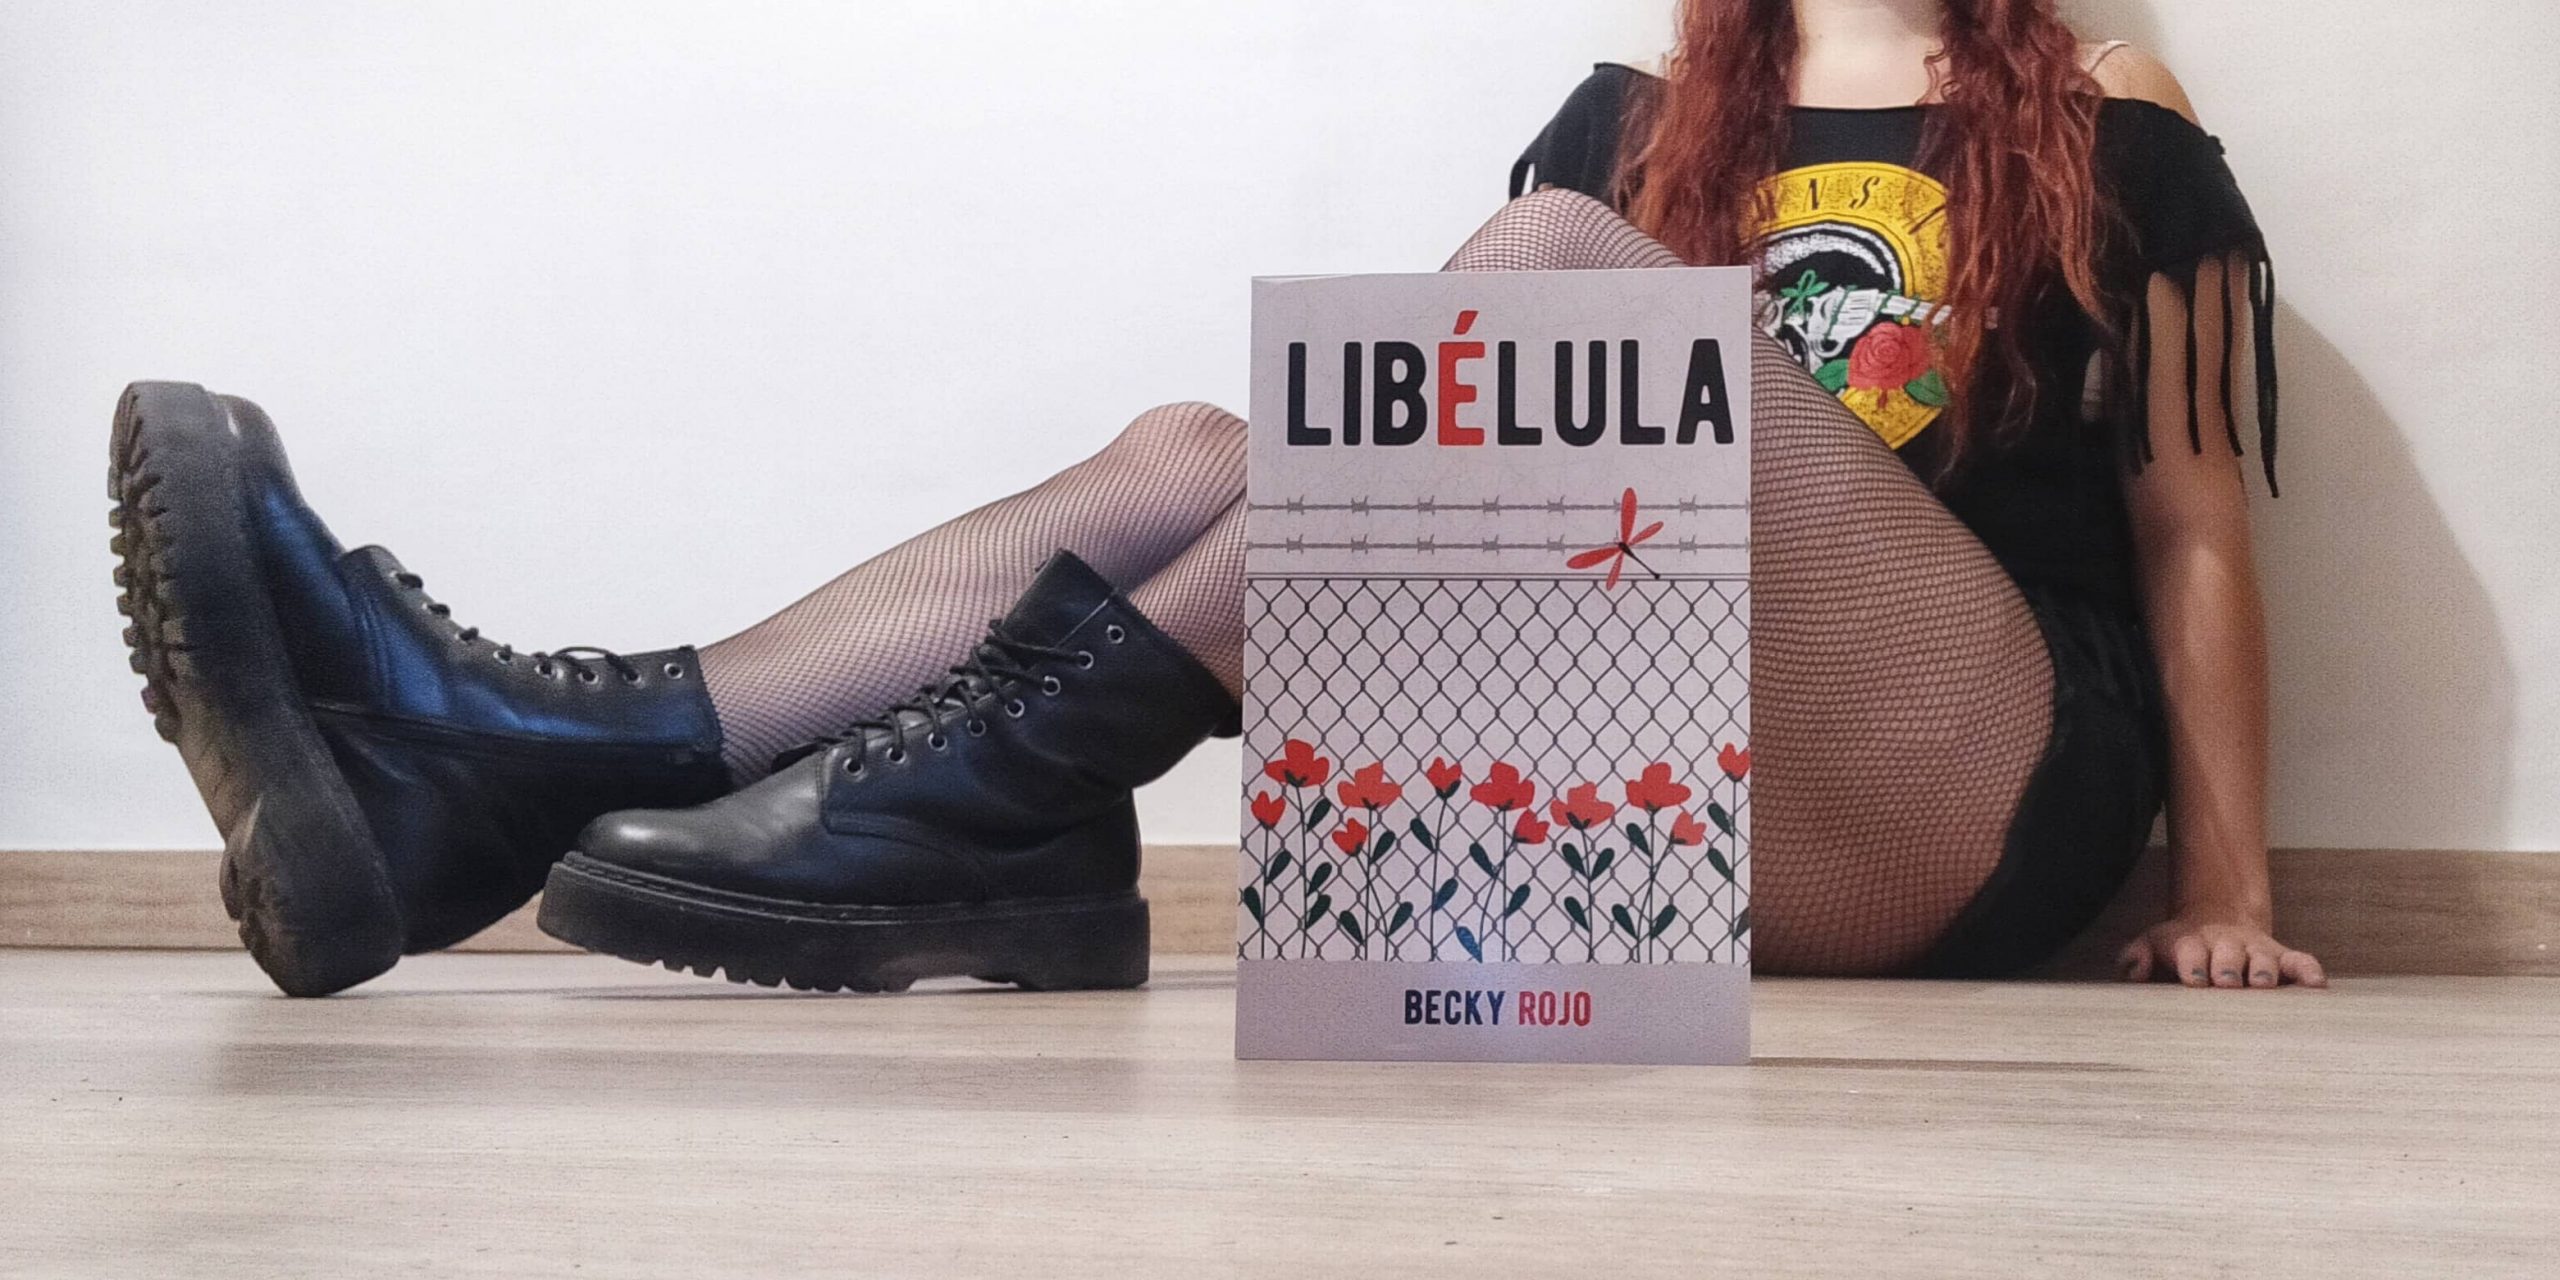 Becky Rojo nos presenta “Libélula”, una historia que no te dejará indiferente